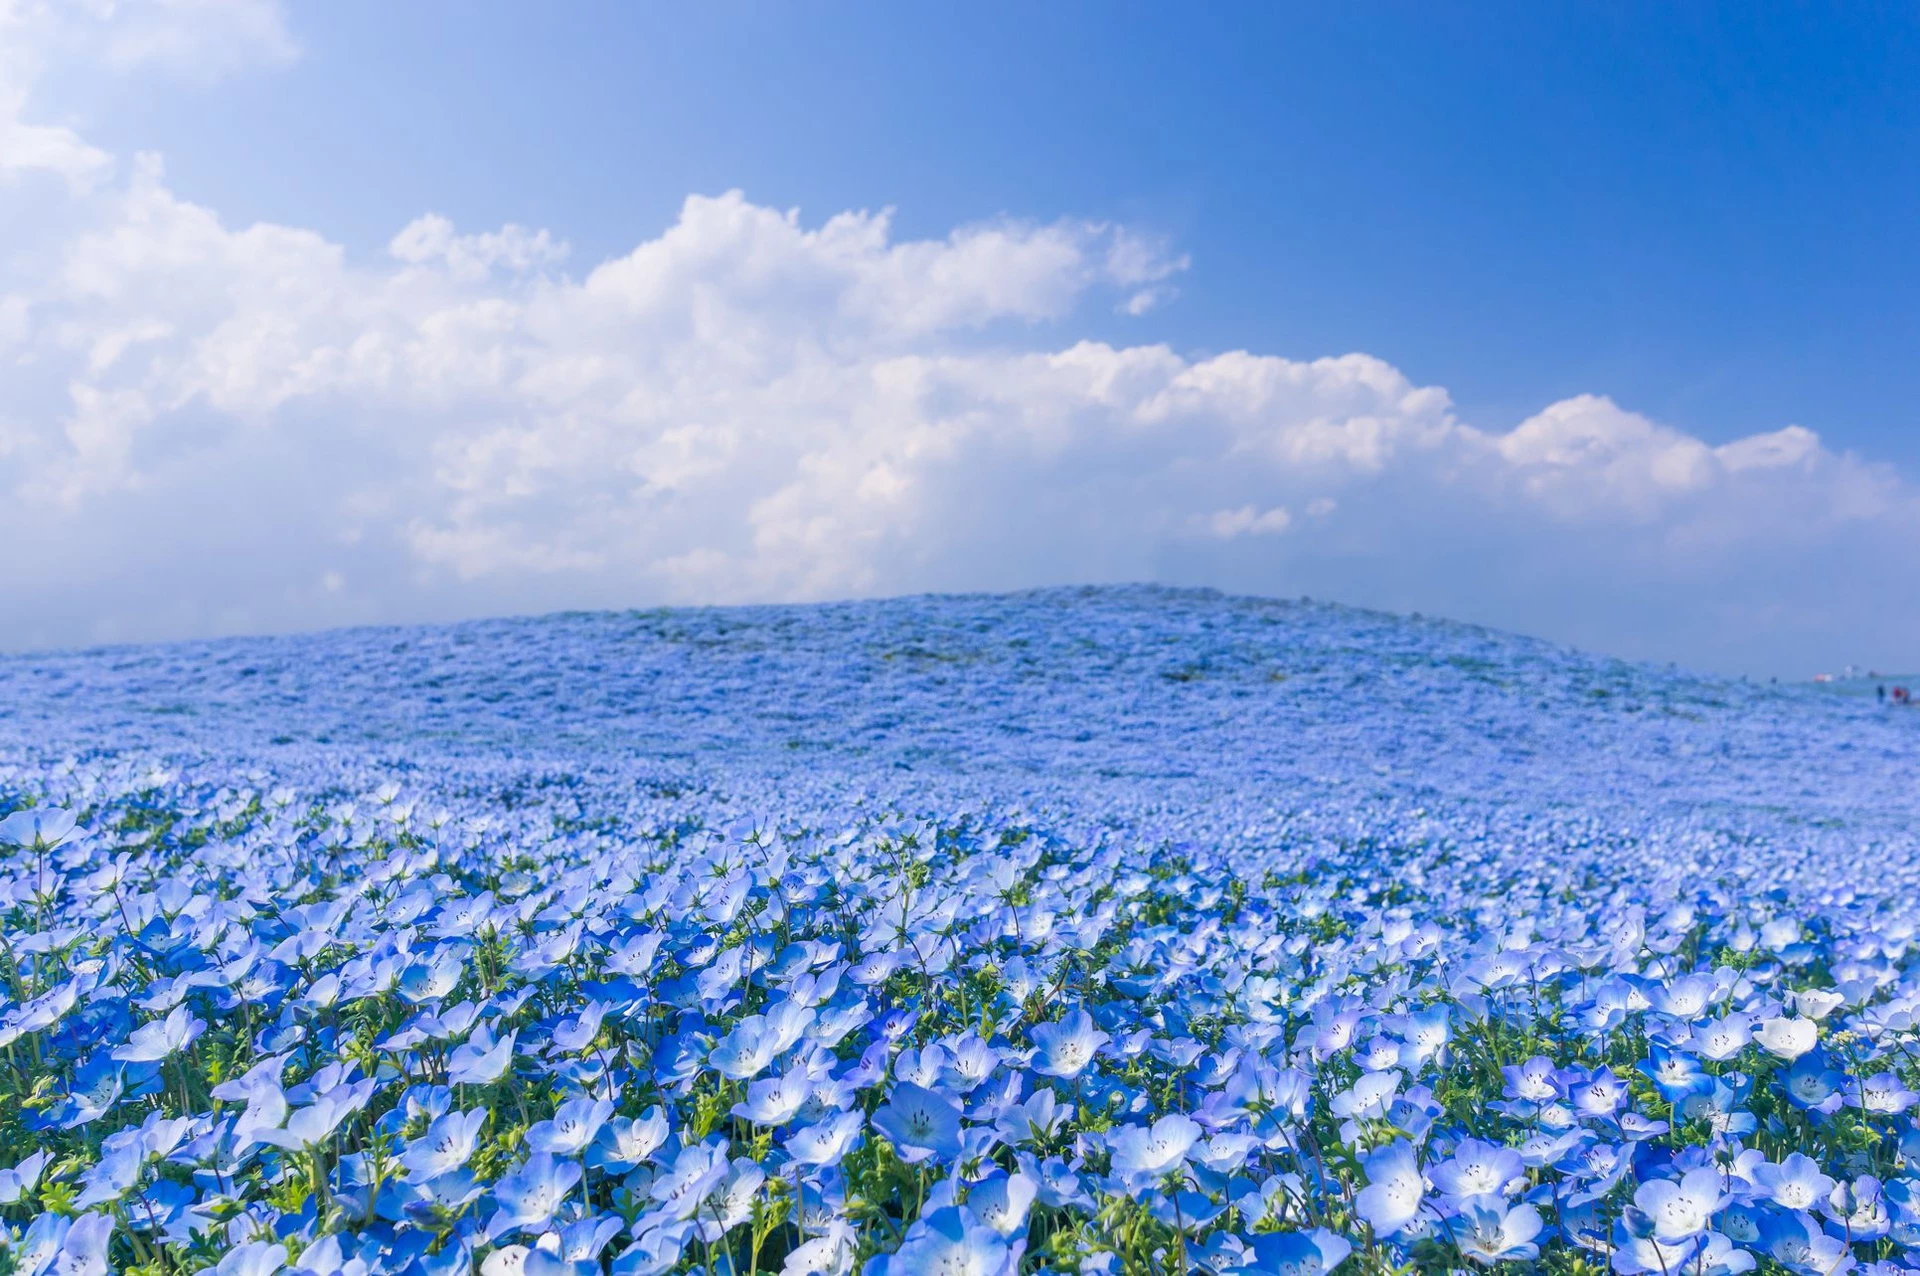 Nằm ở độ cao 58 m so với mực nước biển, nơi cao nhất của công viên, đồi Miharashi rộng 3,5 ha mang đến du khách tầm nhìn toàn cảnh tuyệt đẹp với một màu xanh hòa hợp của sắc hoa và bầu trời. Ảnh: AZURE_TB.